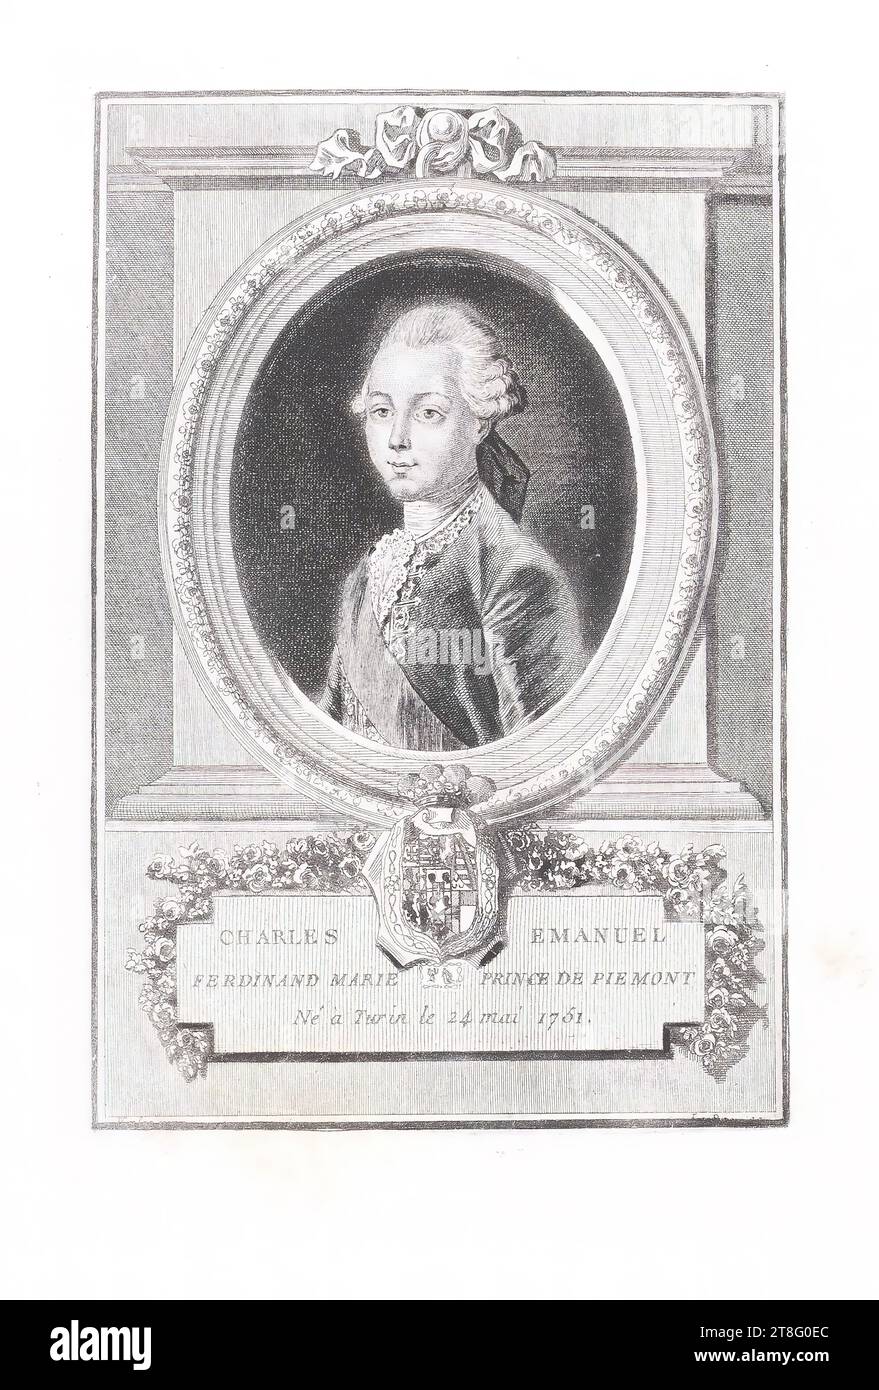 CARLO EMANUELE, FERDINANDO MARIA PRINCIPE DI PIEMONT, nato a Torino il 24 maggio 1751. V.?. ?. ? Alla città di Foto Stock